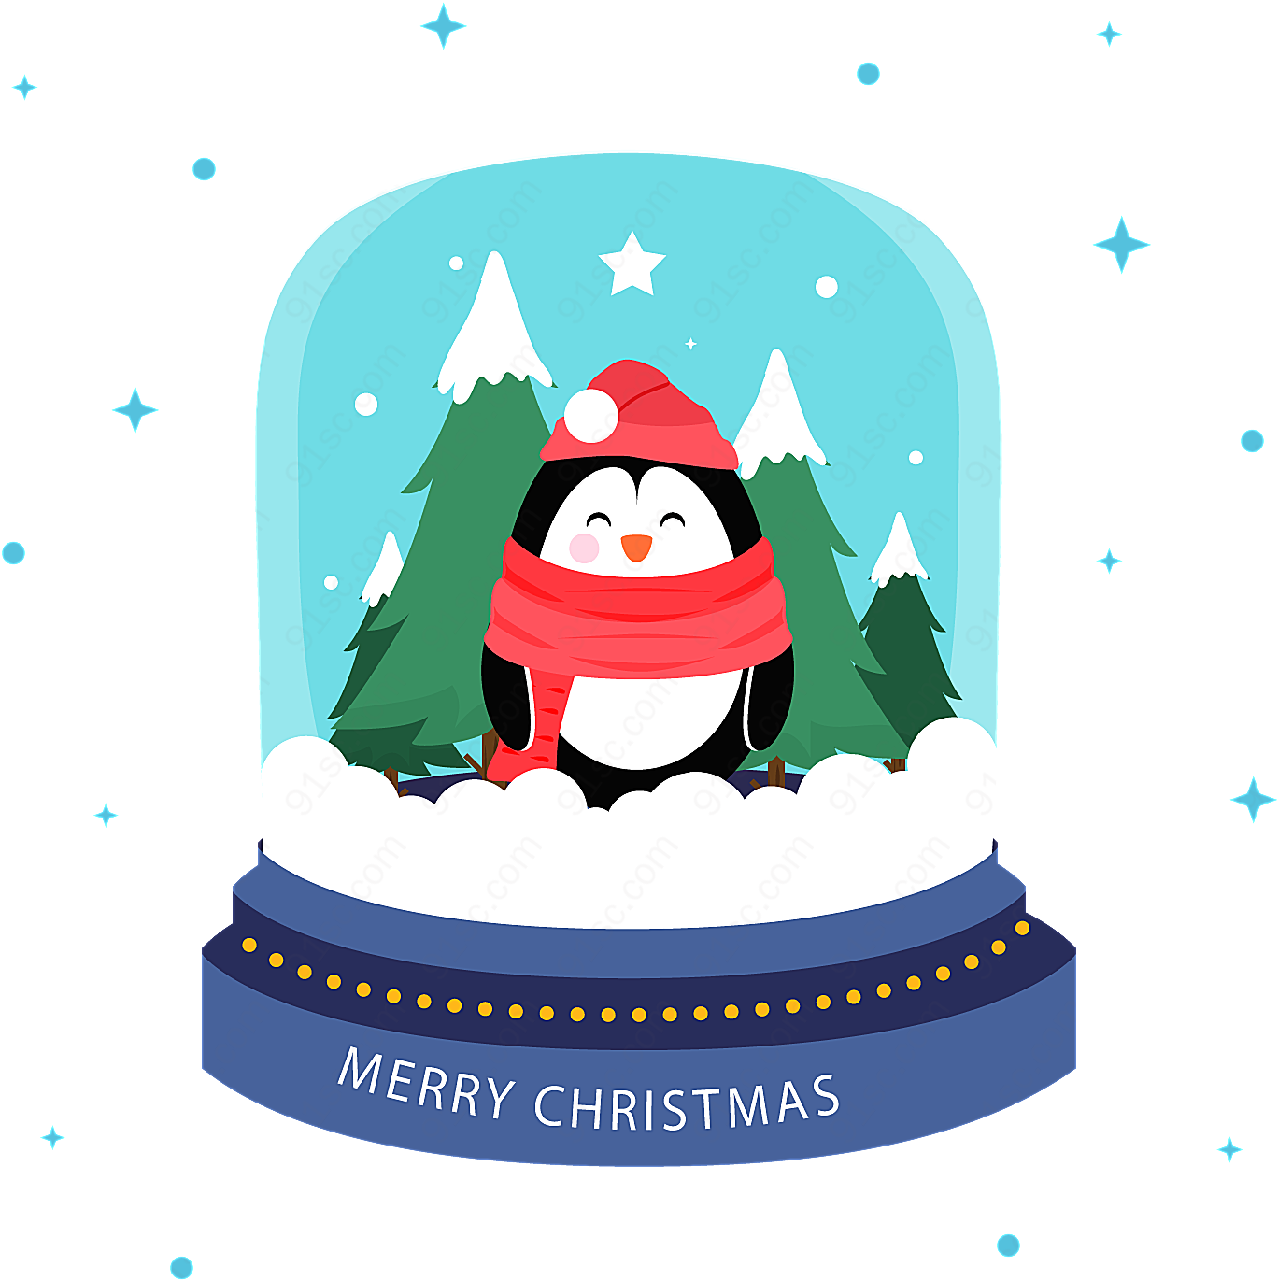 企鹅雪花水晶球矢量圣诞节